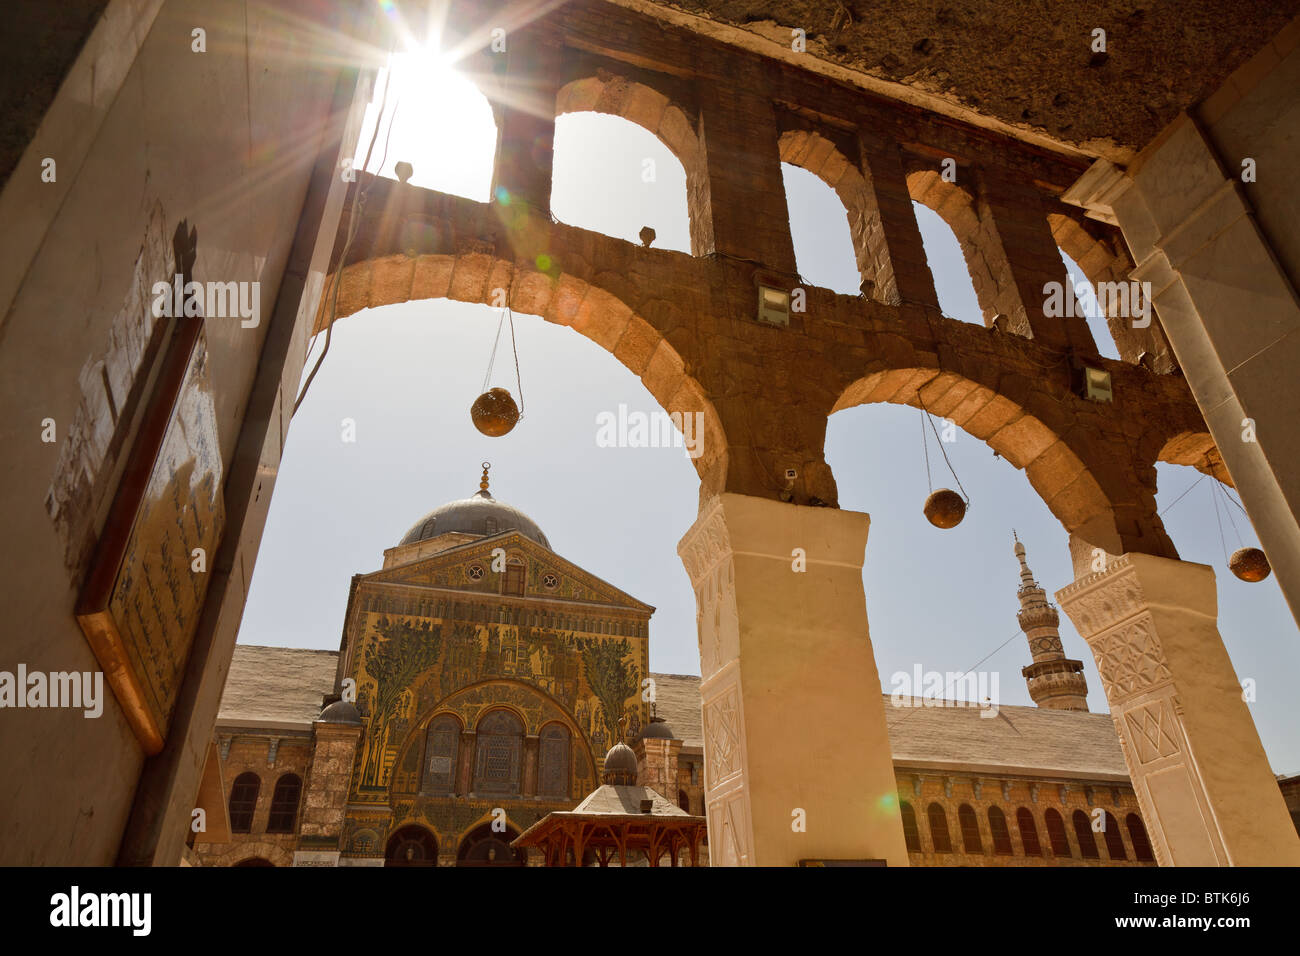 La grande mosquée umayad à Damas, Syrie Banque D'Images